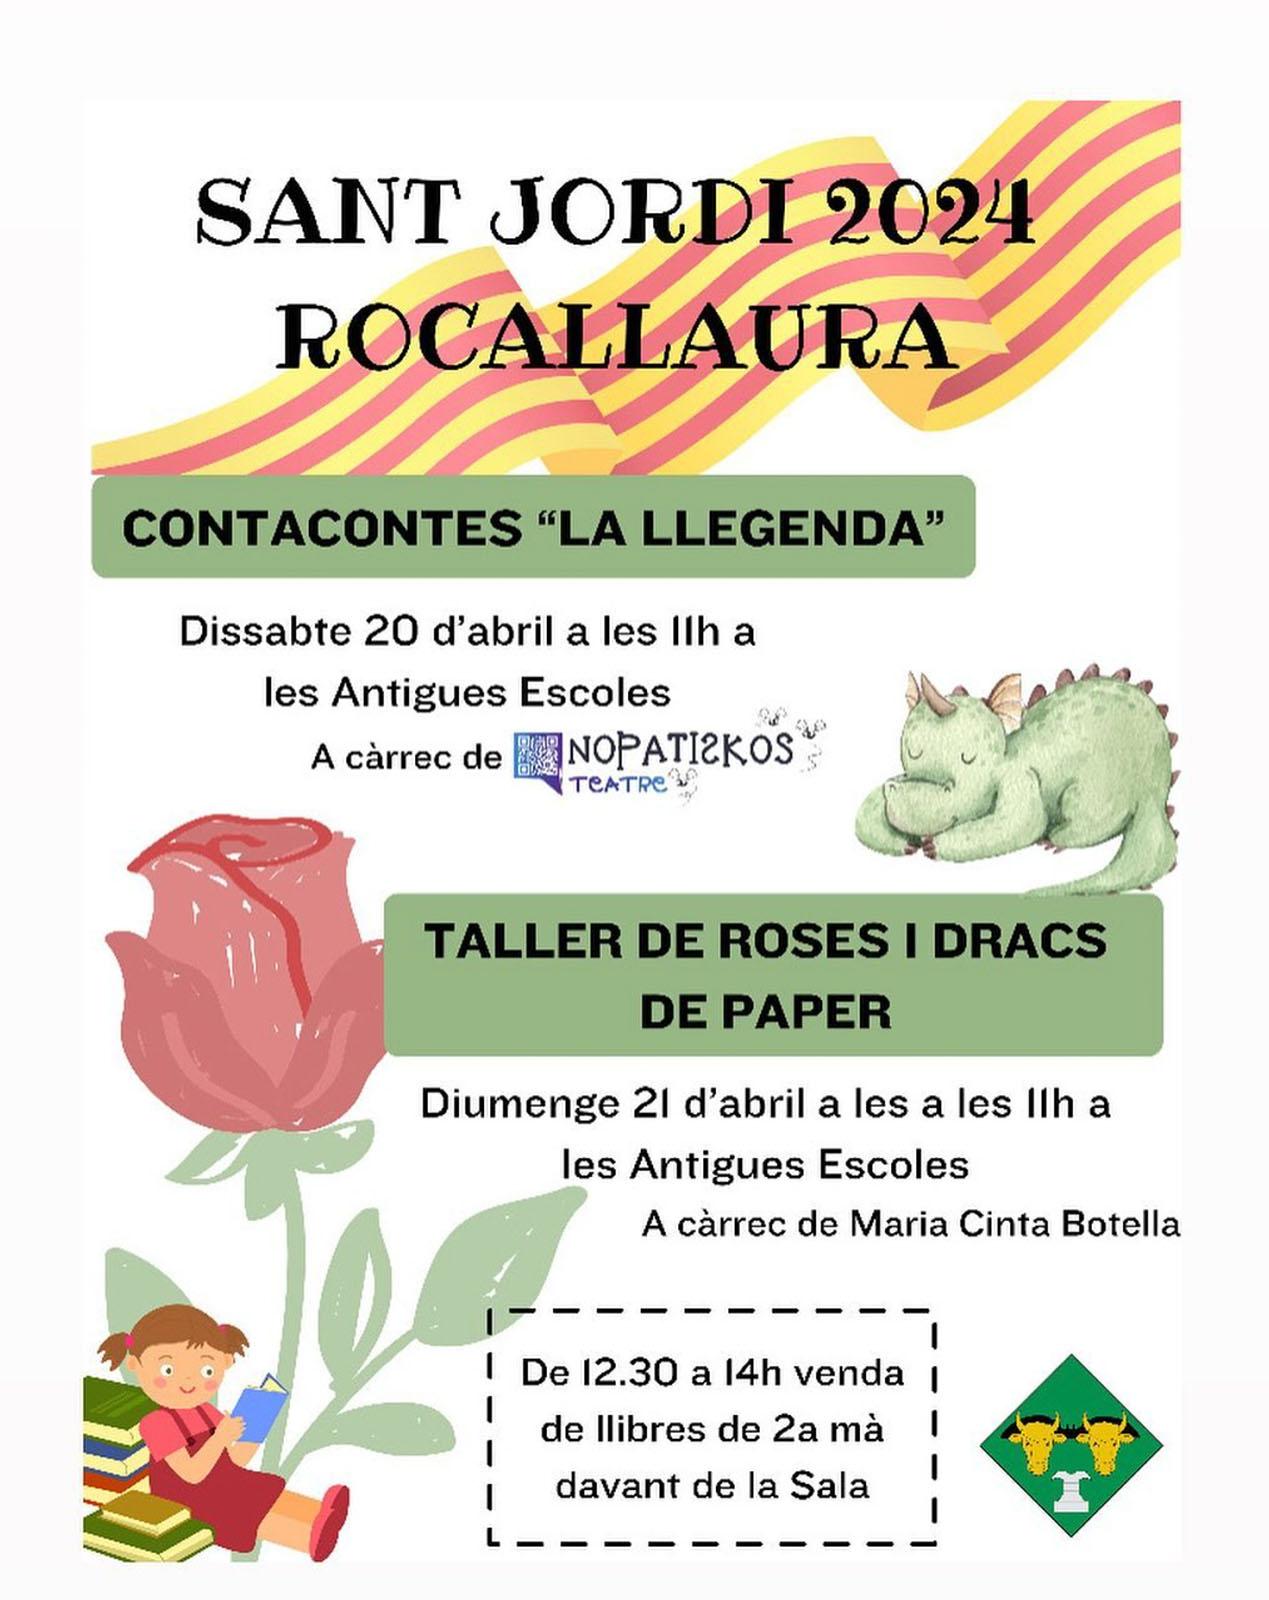 cartell Diada de Sant Jordi 2024 a Rocallaura